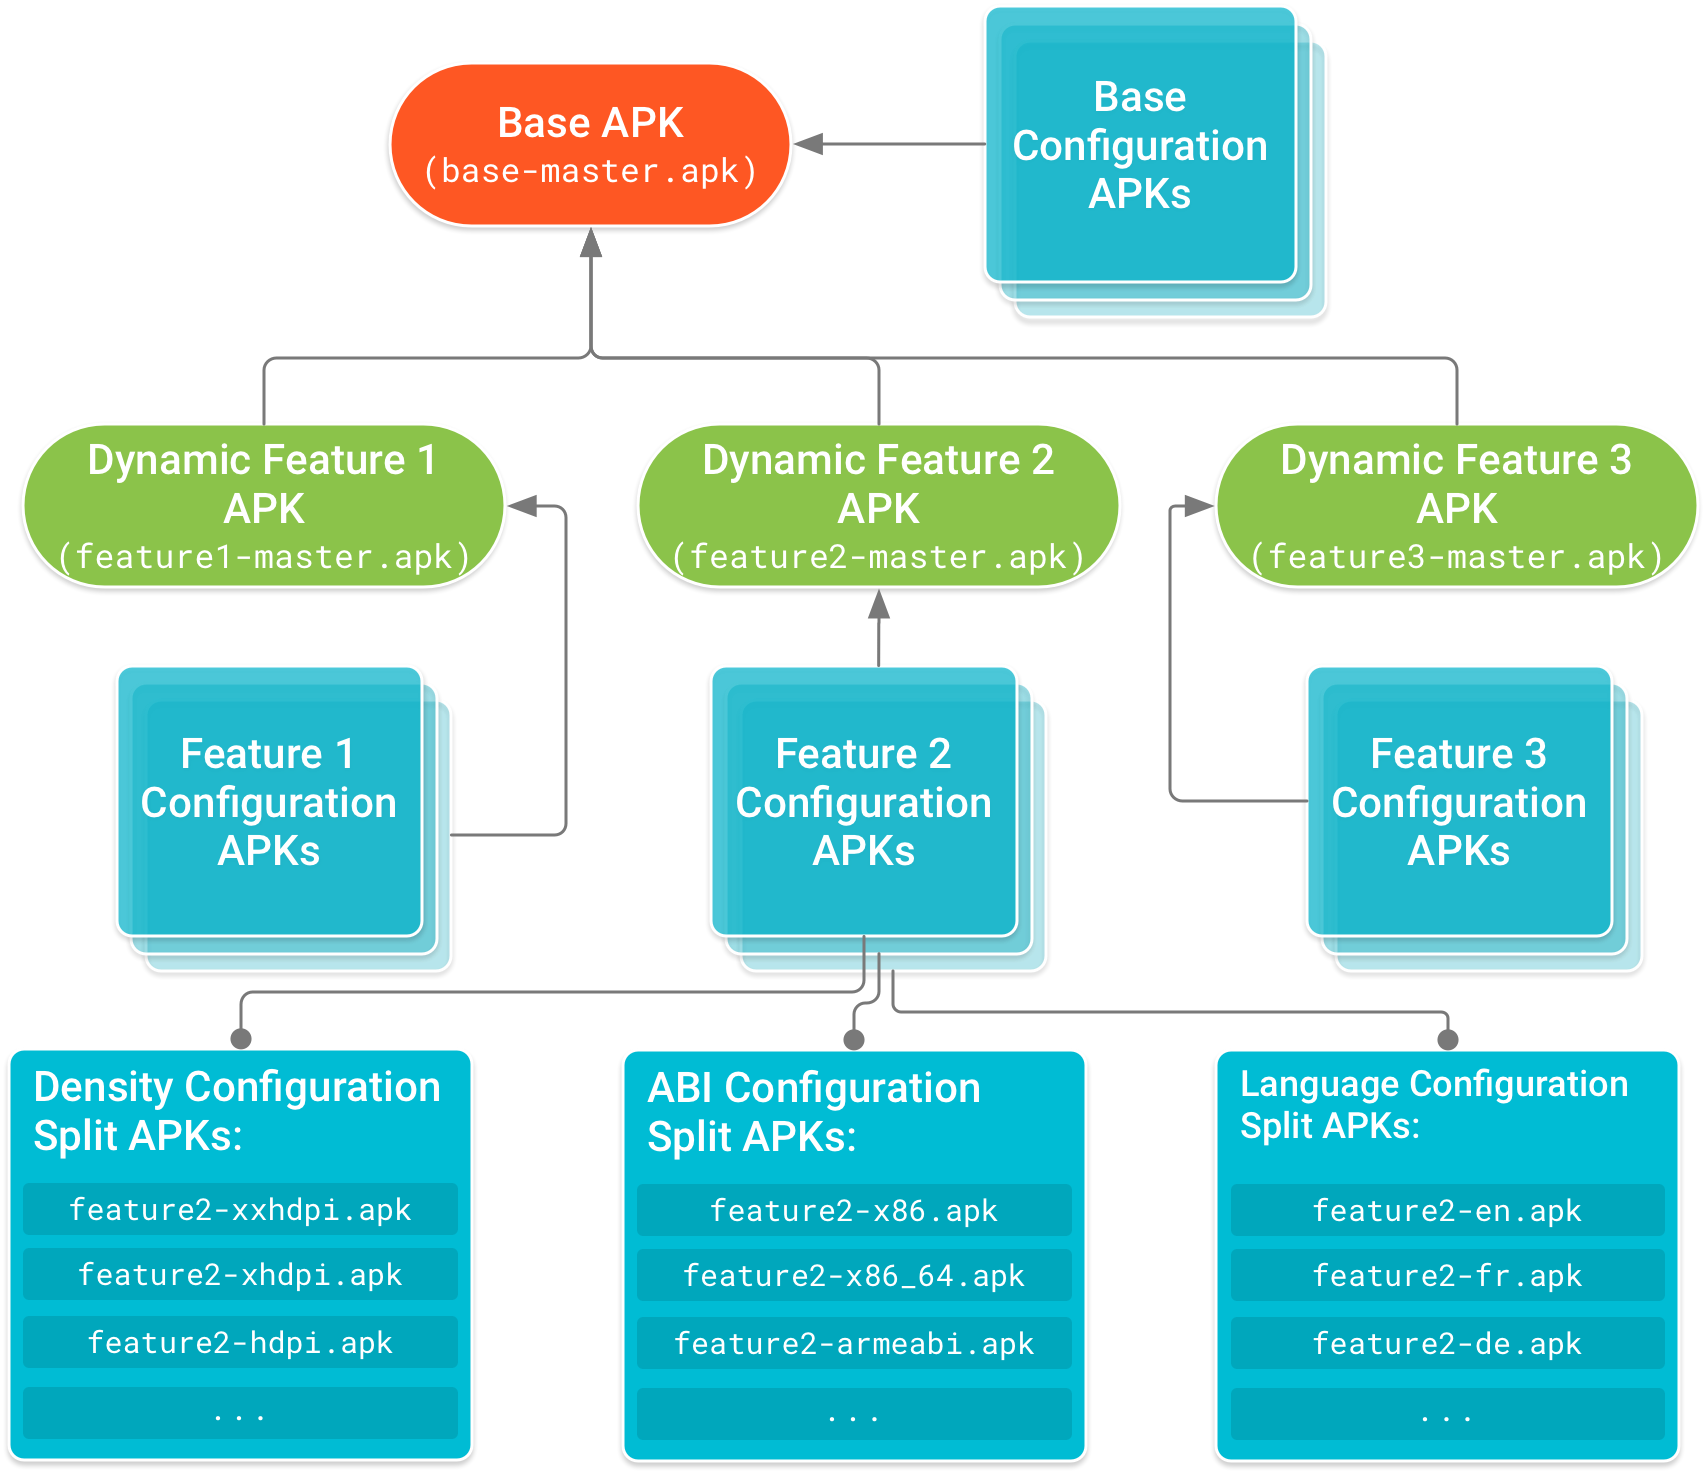 Das Basis-APK befindet sich an der Spitze des Baums. Die Funktionsmodul-APKs sind davon abhängig. Konfigurations-APKs, die gerätekonfigurationsspezifischen Code und Ressourcen für die Basis und jedes Featuremodul-APK enthalten, bilden die Blattknoten der Abhängigkeitsstruktur.